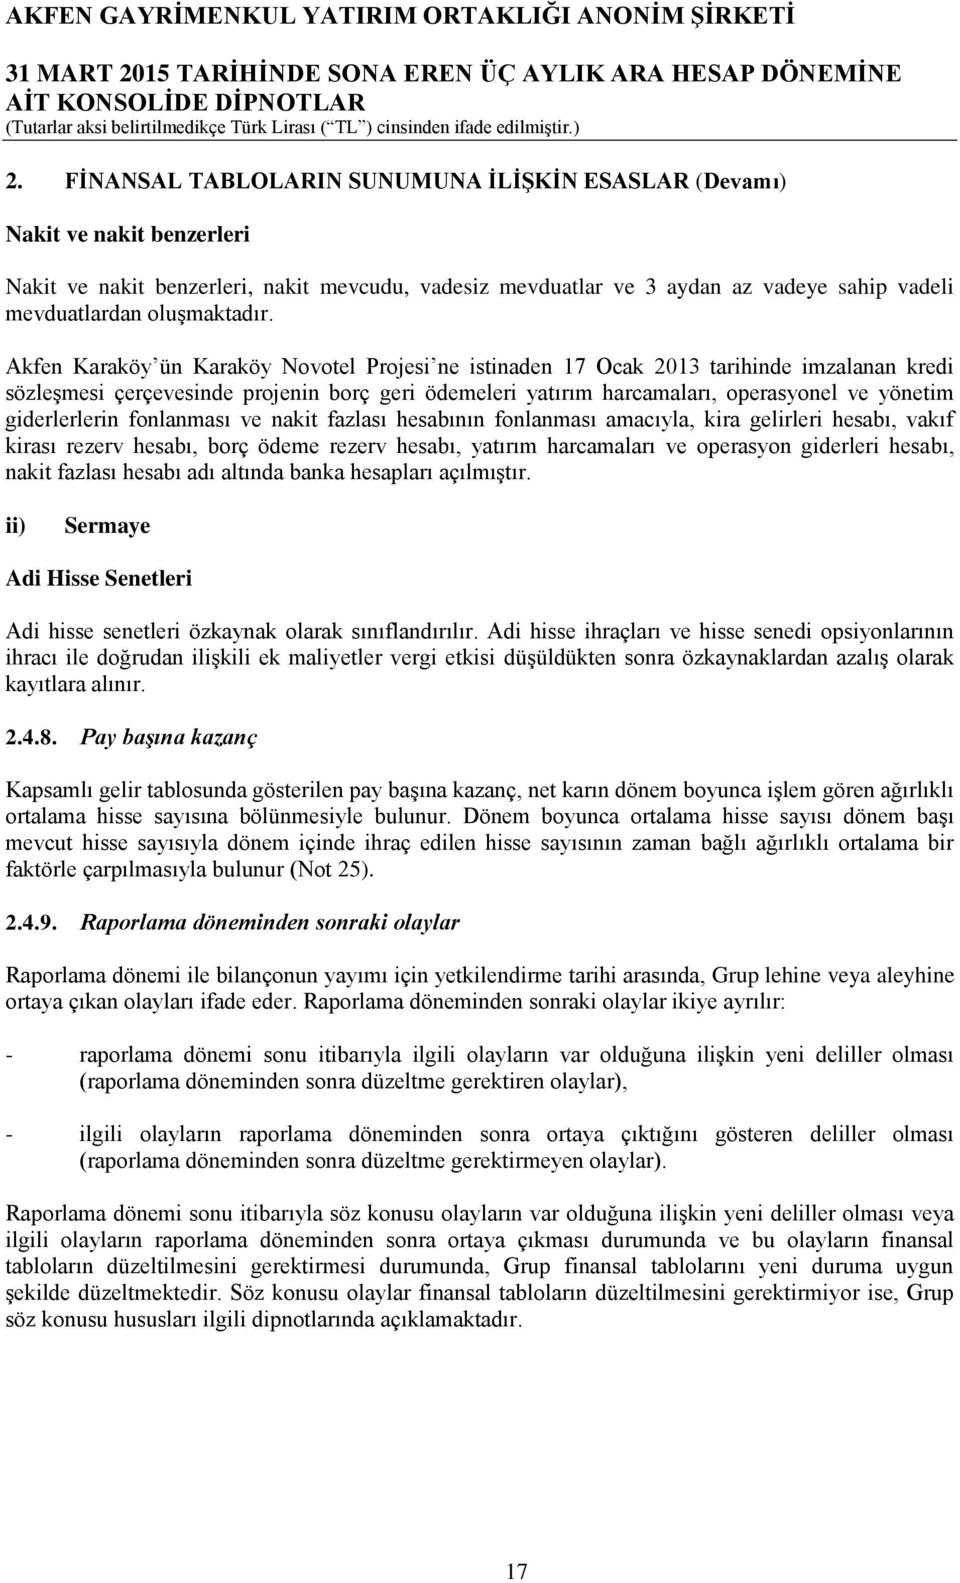 Akfen Karaköy ün Karaköy Novotel Projesi ne istinaden 17 Ocak 2013 tarihinde imzalanan kredi sözleşmesi çerçevesinde projenin borç geri ödemeleri yatırım harcamaları, operasyonel ve yönetim